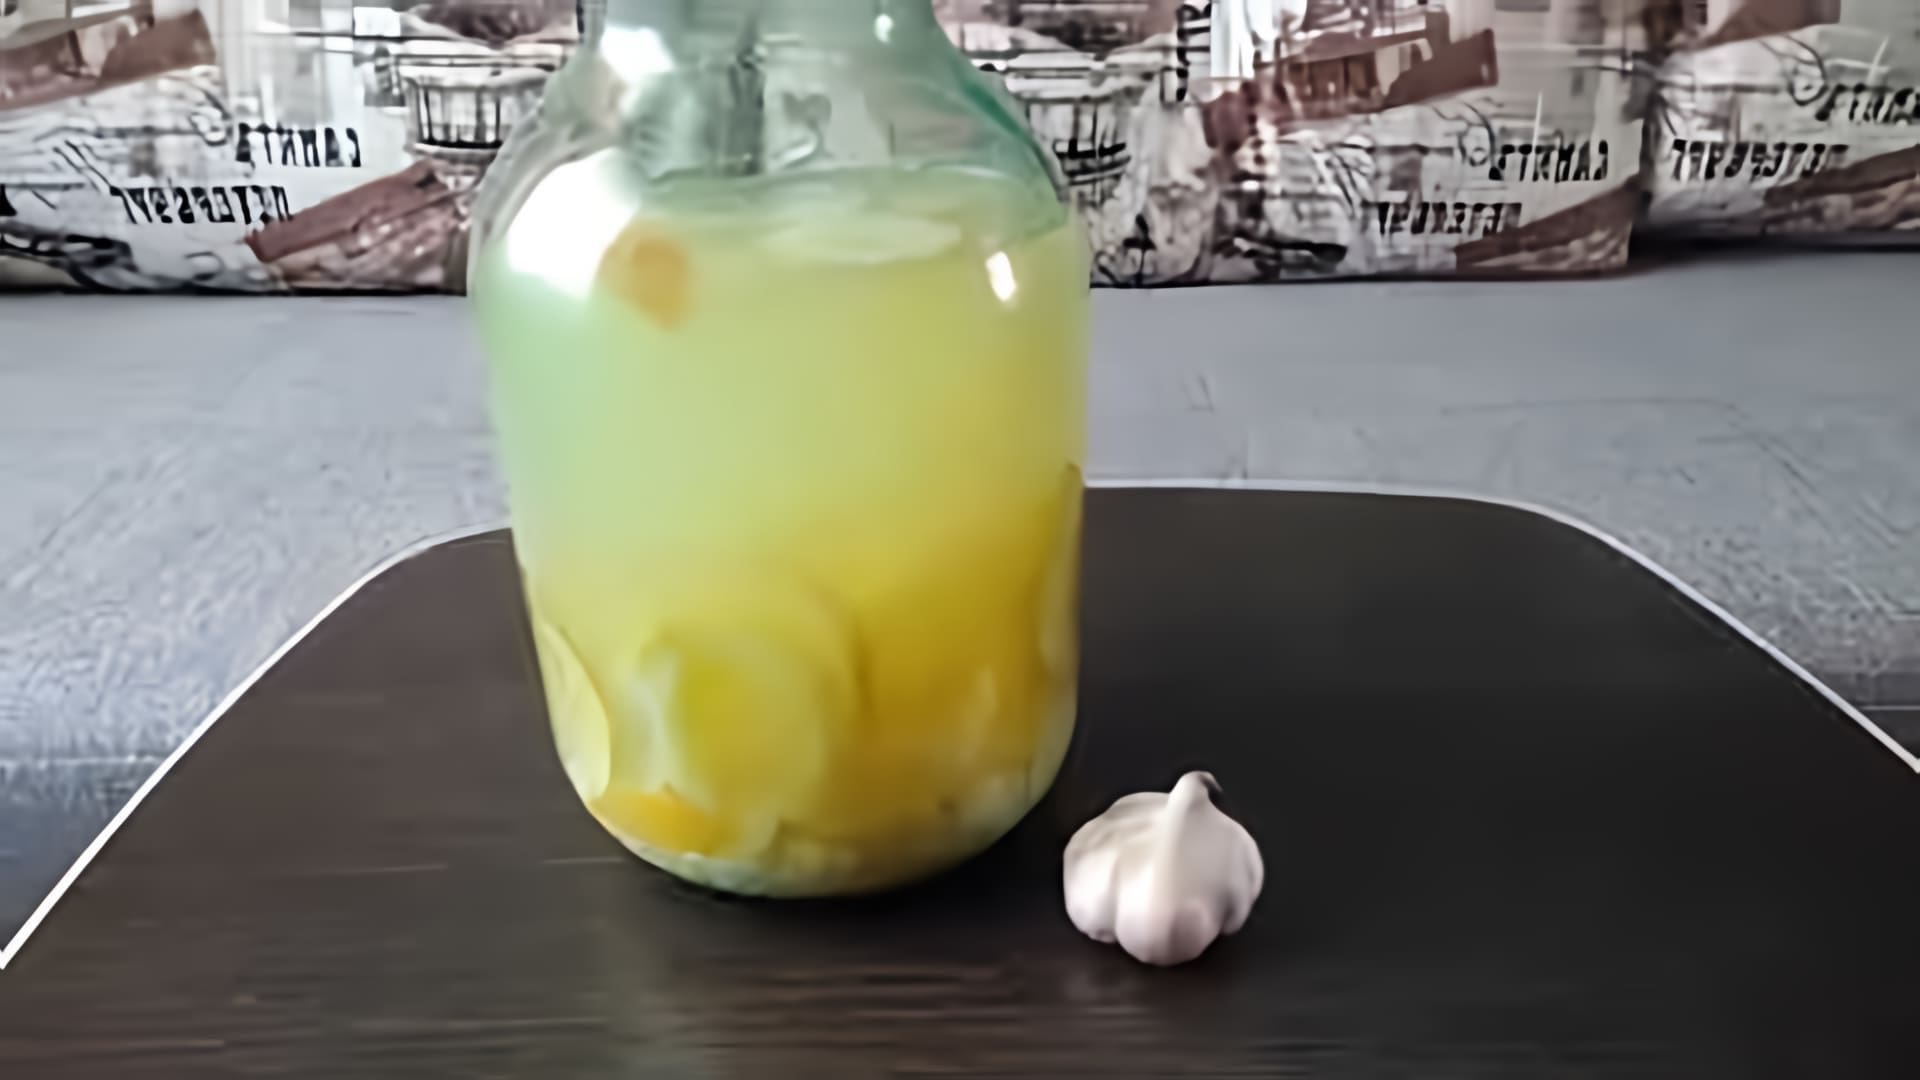 В этом видео рассказывается о настойке лимона и чеснока, которая является простым и очень действенным средством